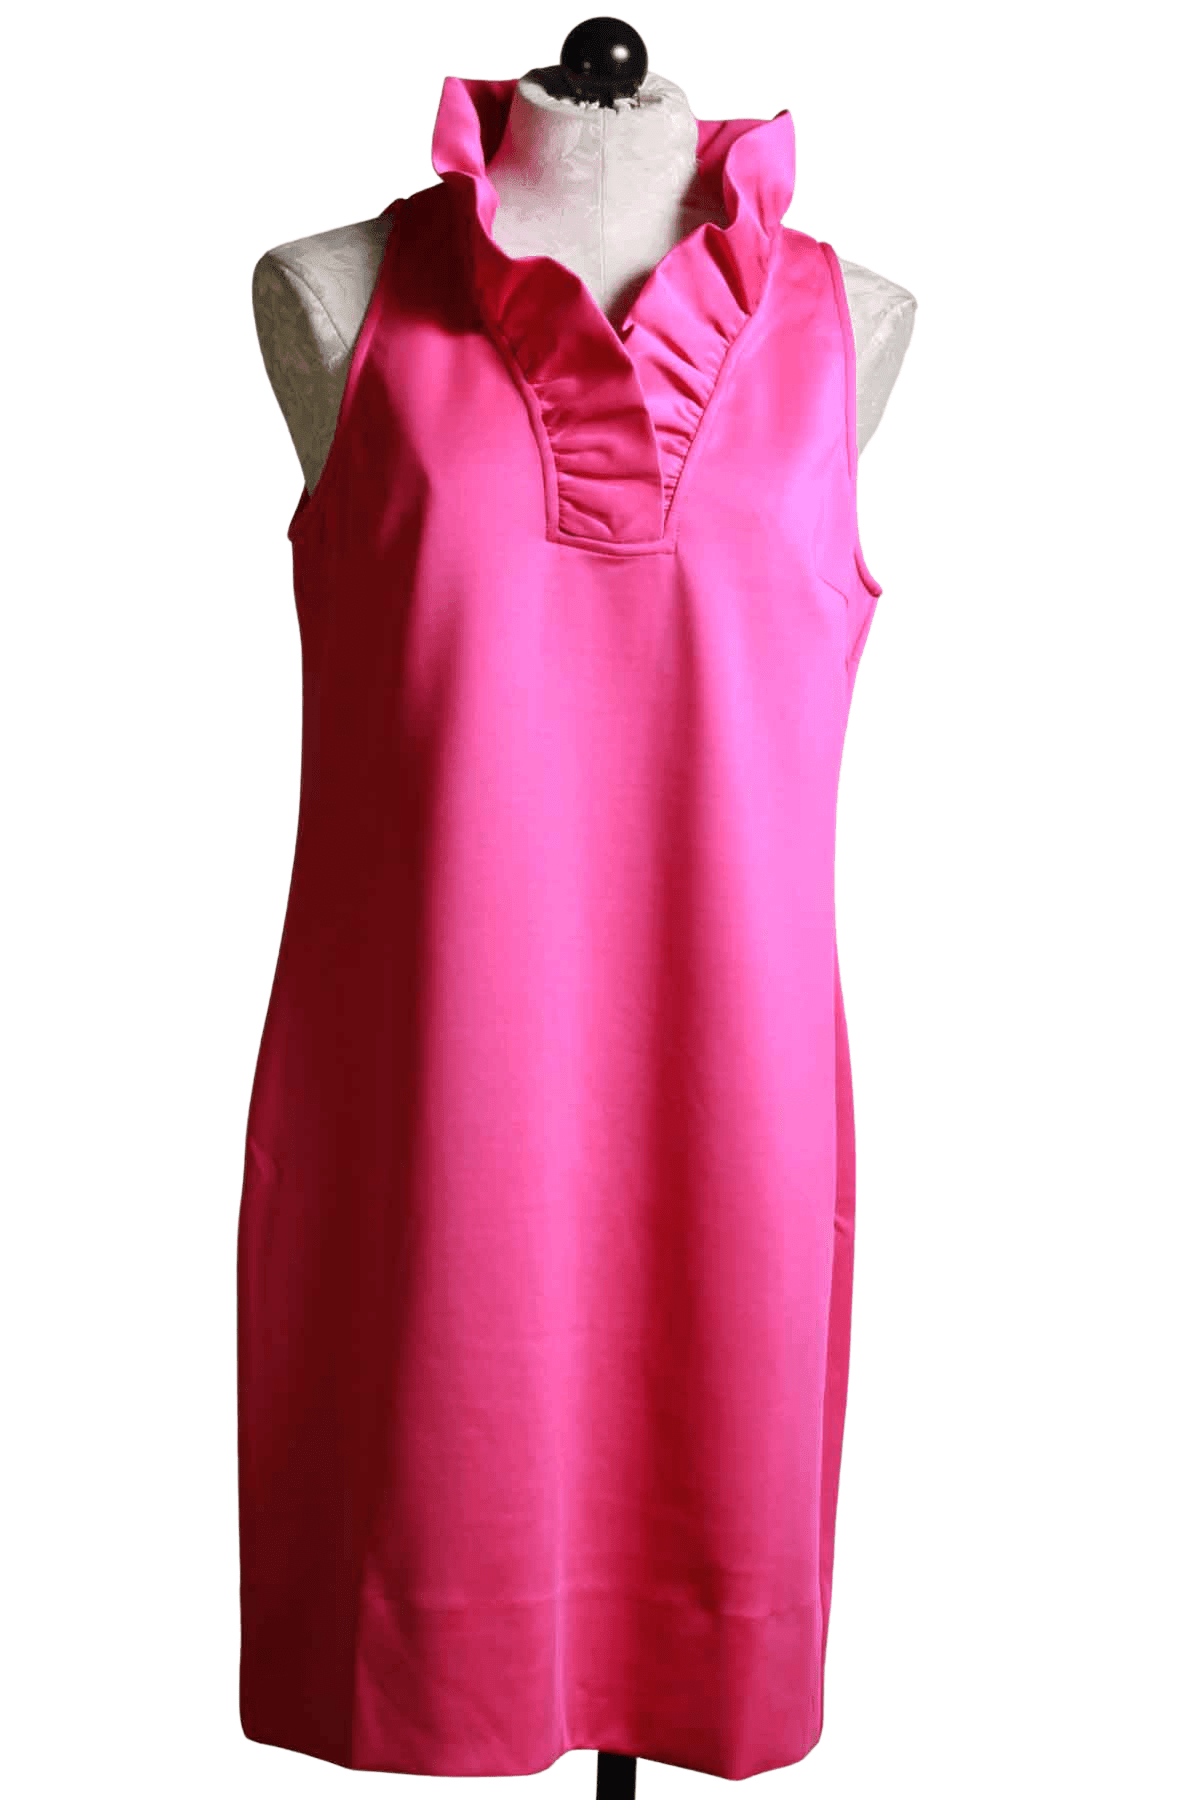 Pink sleeveless ruffle neck dress by Gretchen Scott